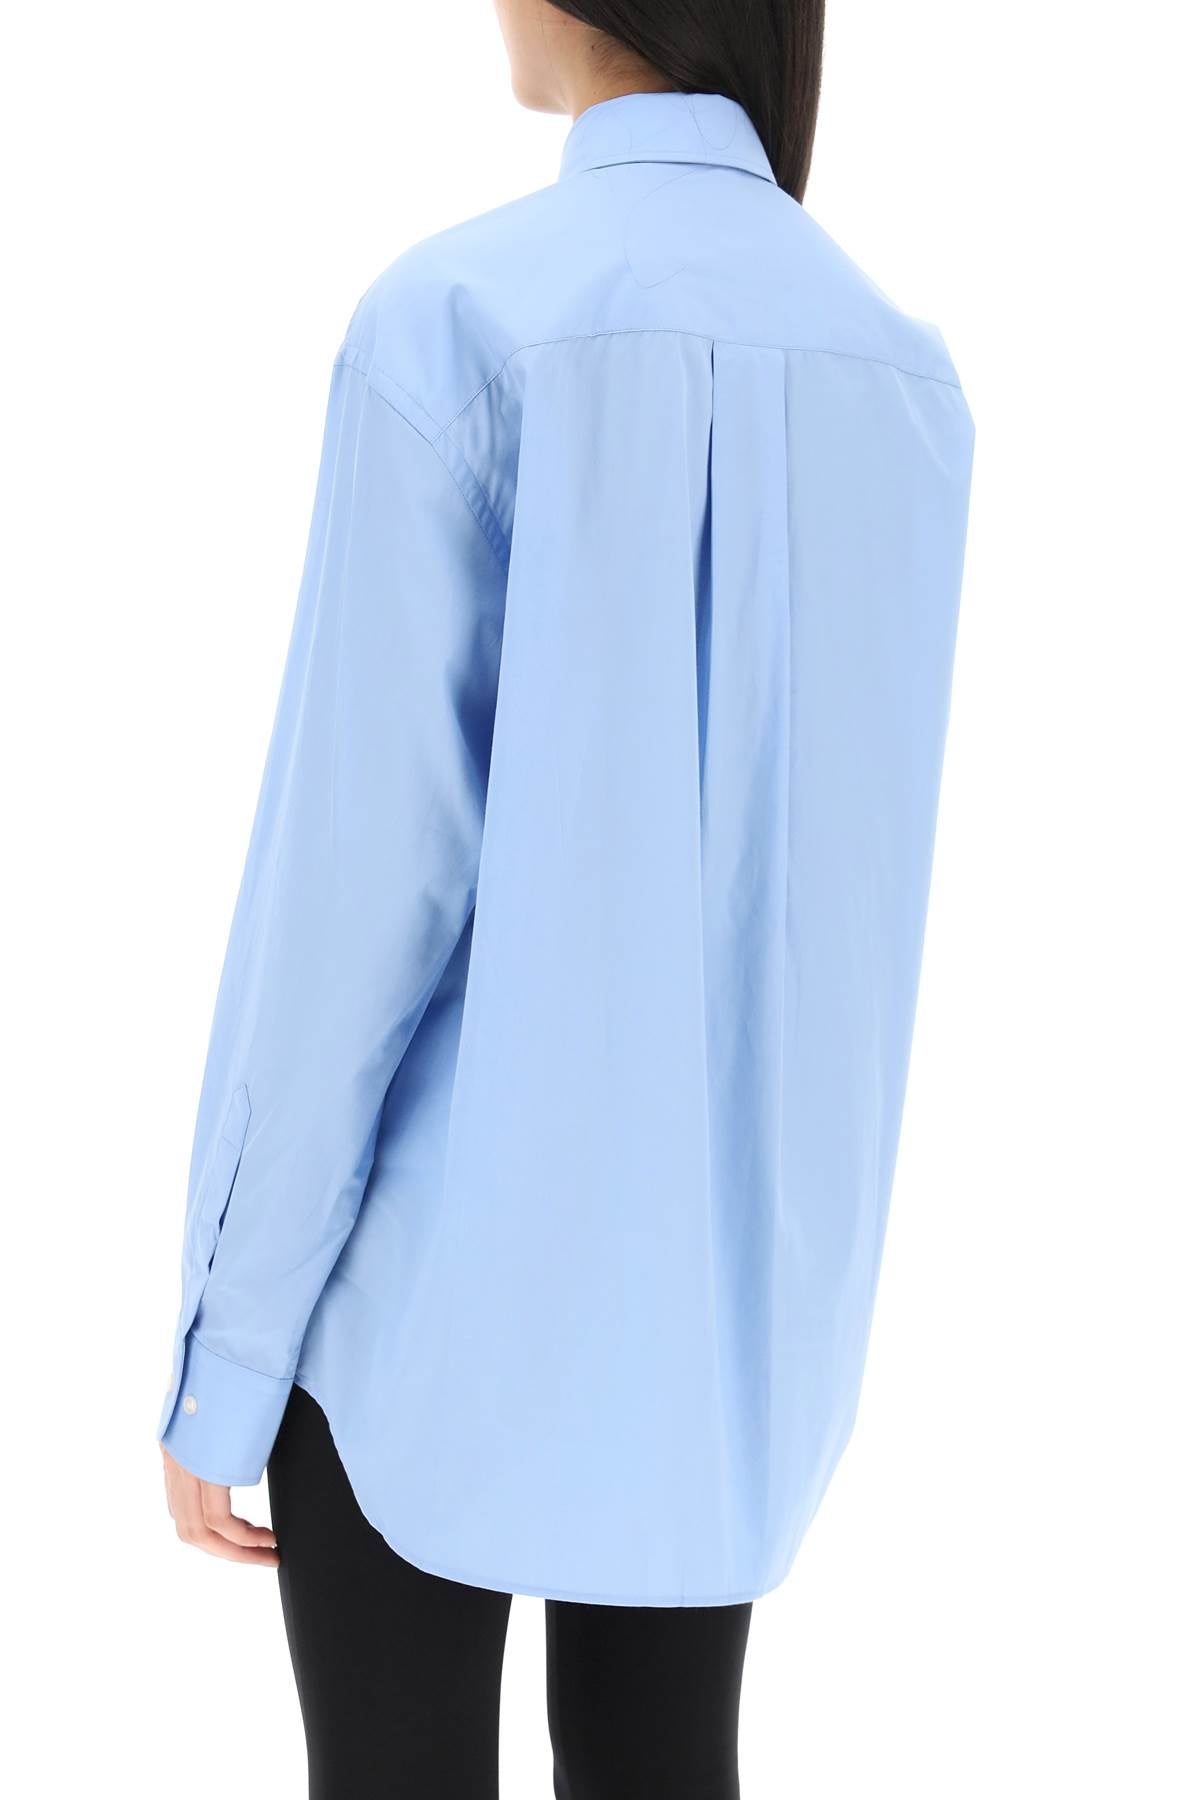 Wardrobe.Nyc Oversized Shirt   Blue